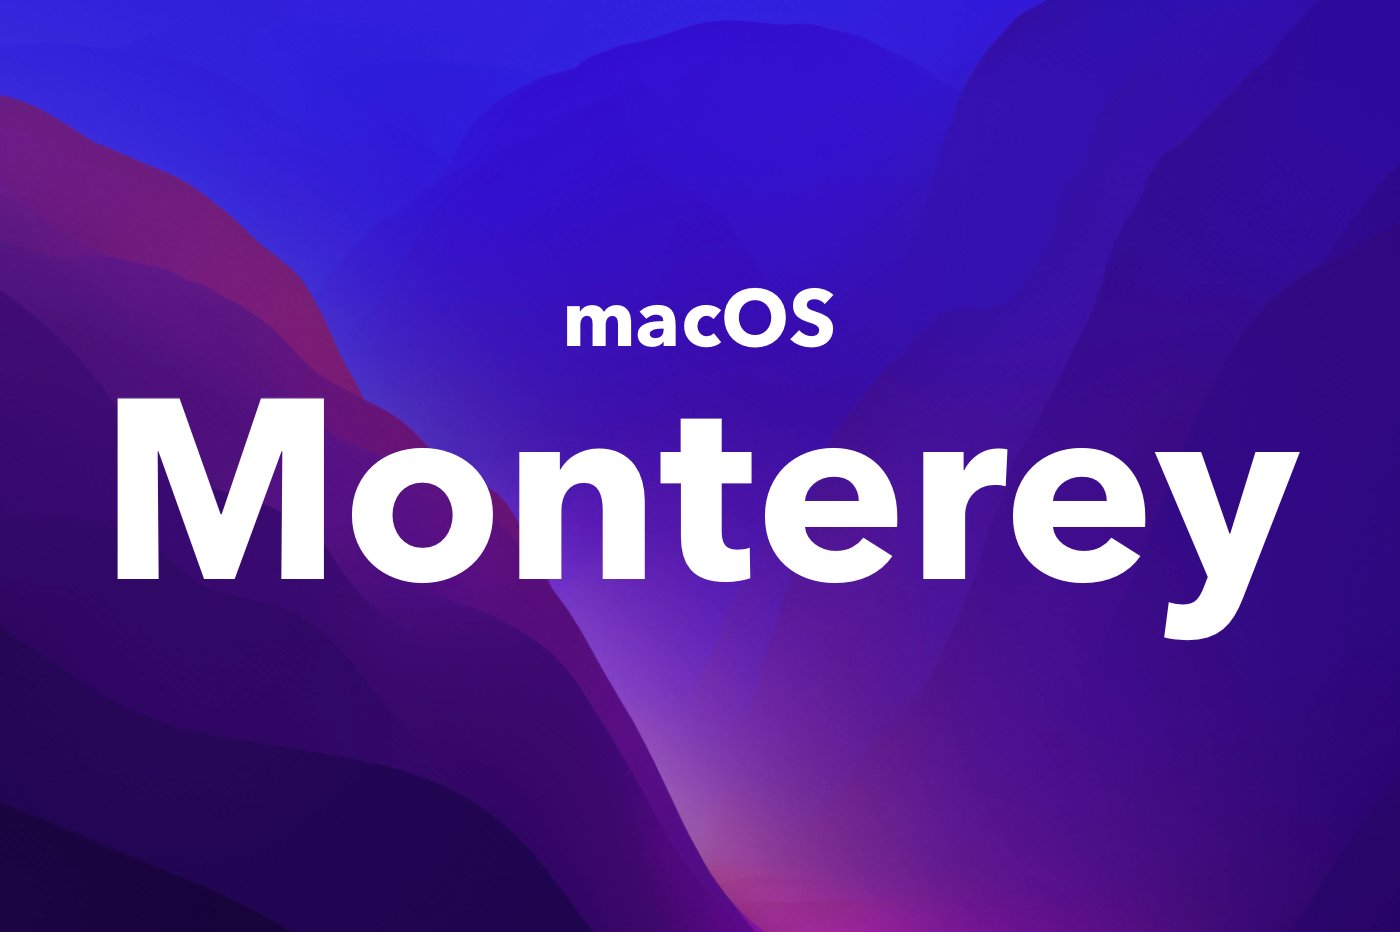 macOS Monterey fond d'écran sombre